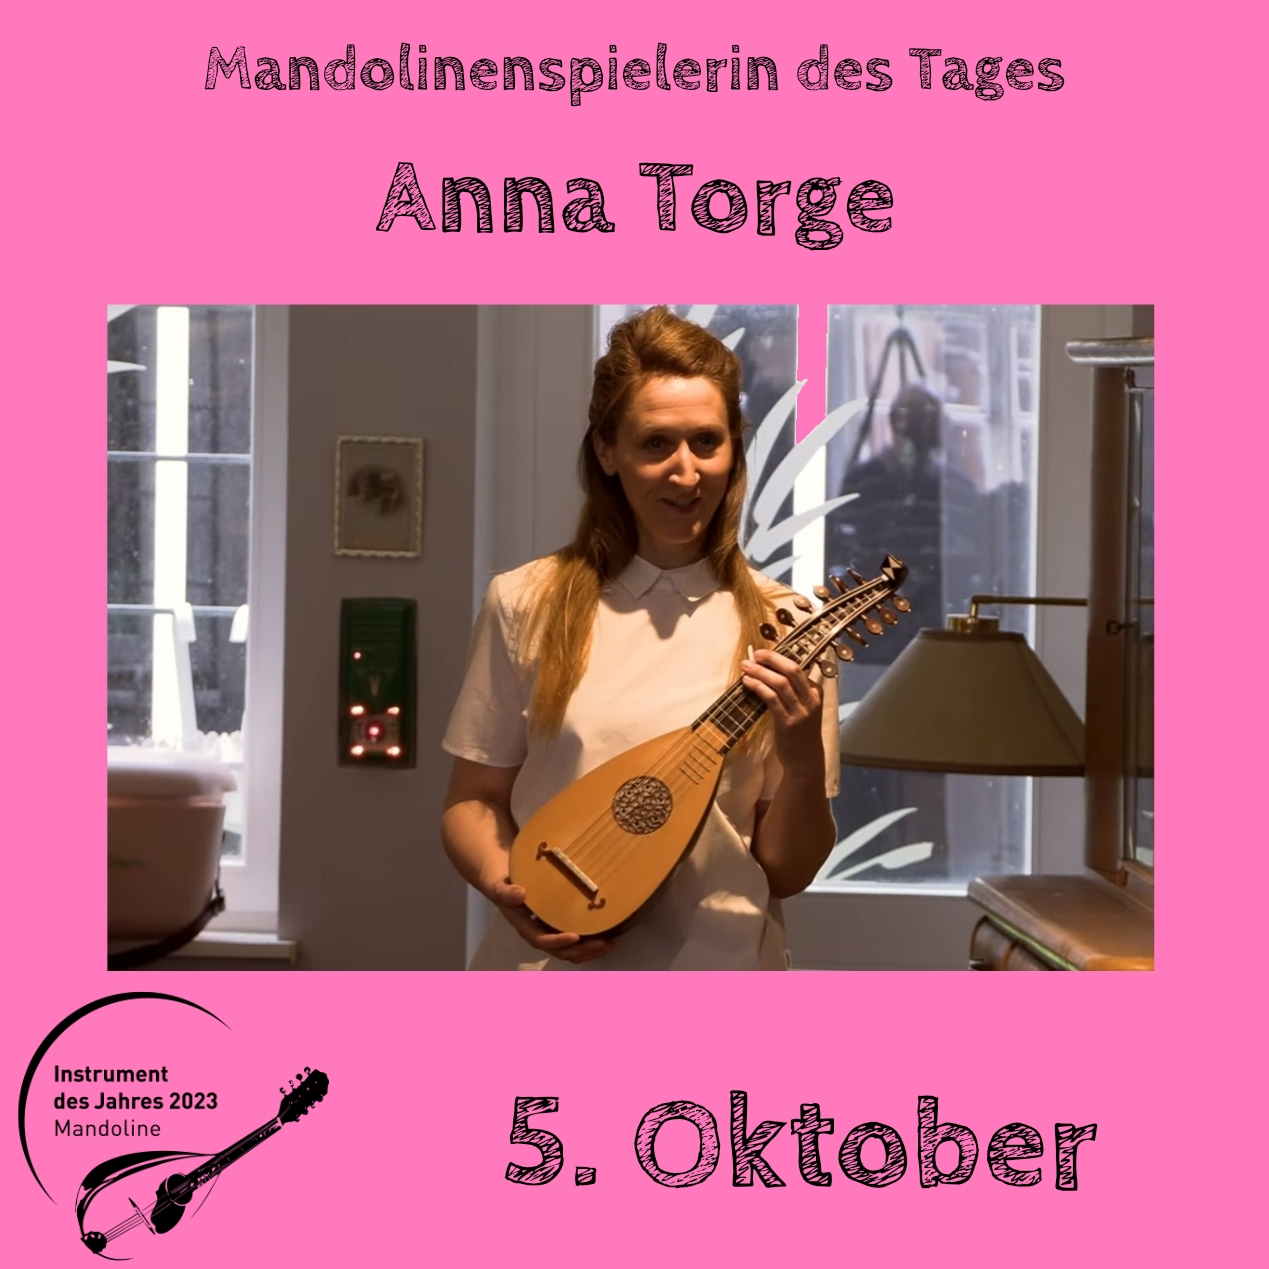 5. Oktober - Anna Torge Instrument des Jahres 2023 Mandolinenspieler Mandolinenspielerin des Tages